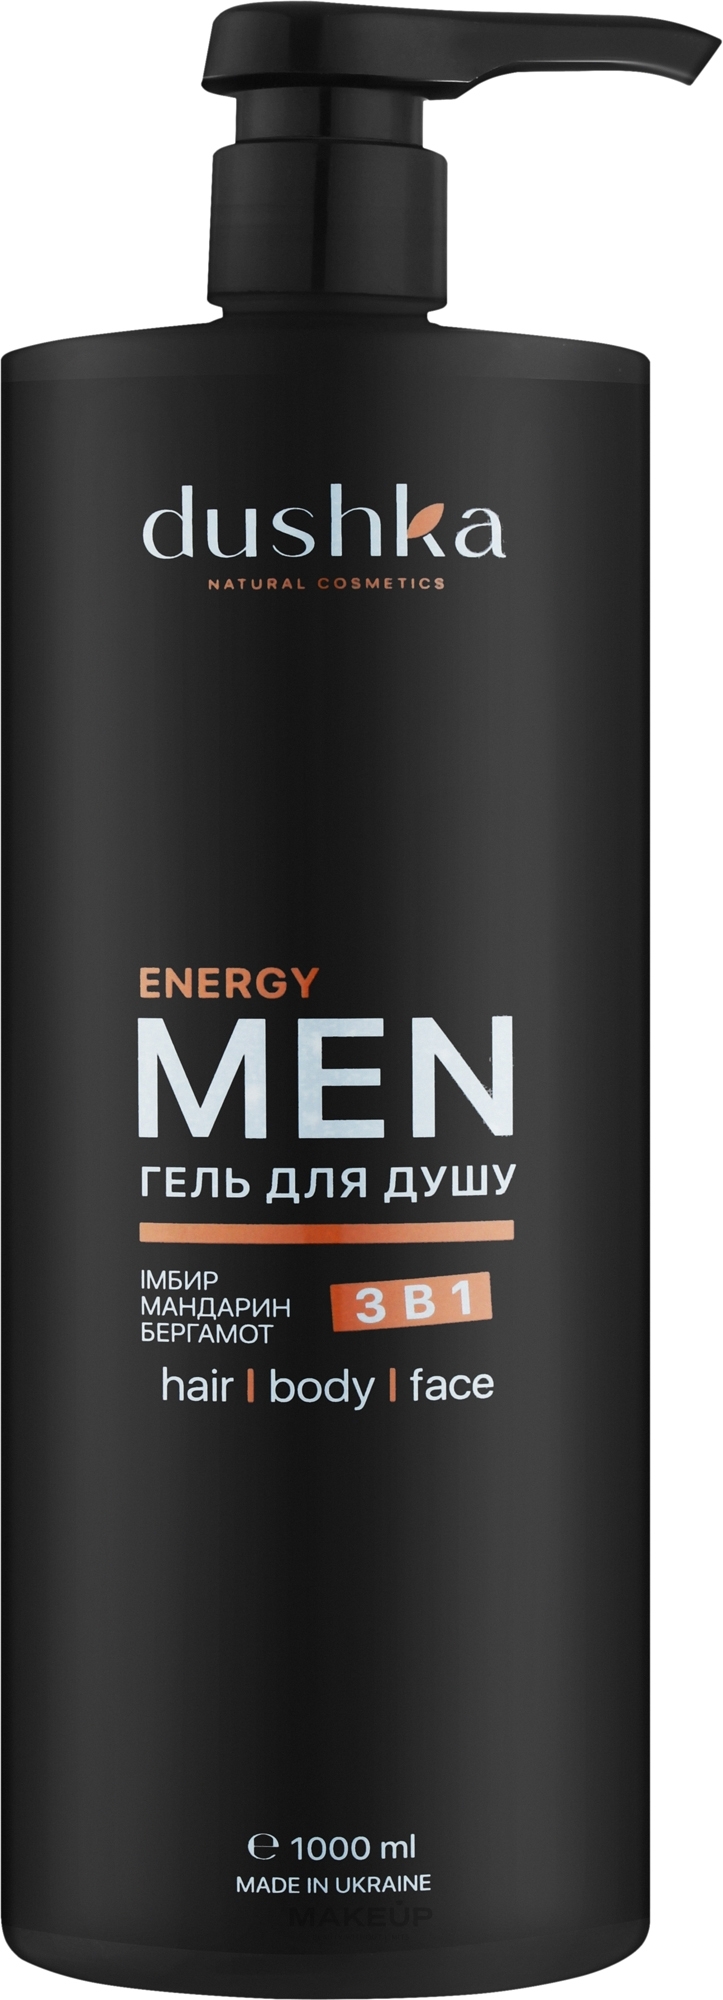 Чоловічий гель для душу 3 в 1 - Dushka Men Energy 3in1 Shower Gel — фото 1000ml